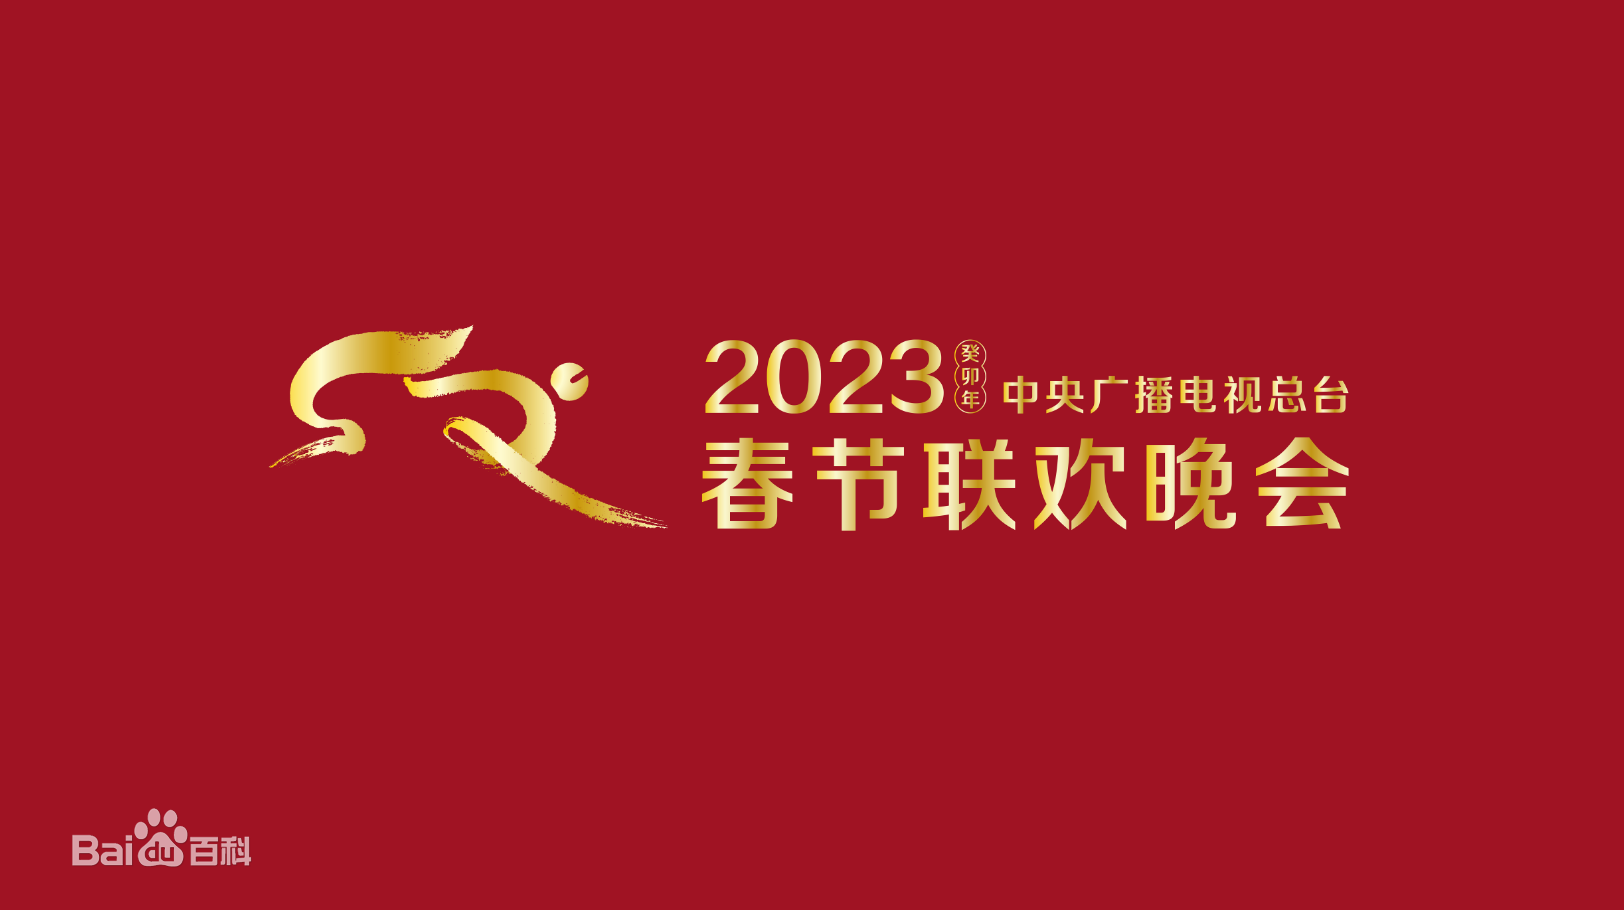 2023春节晚会-2023中央广播电视总台春节联欢晚会(大结局)